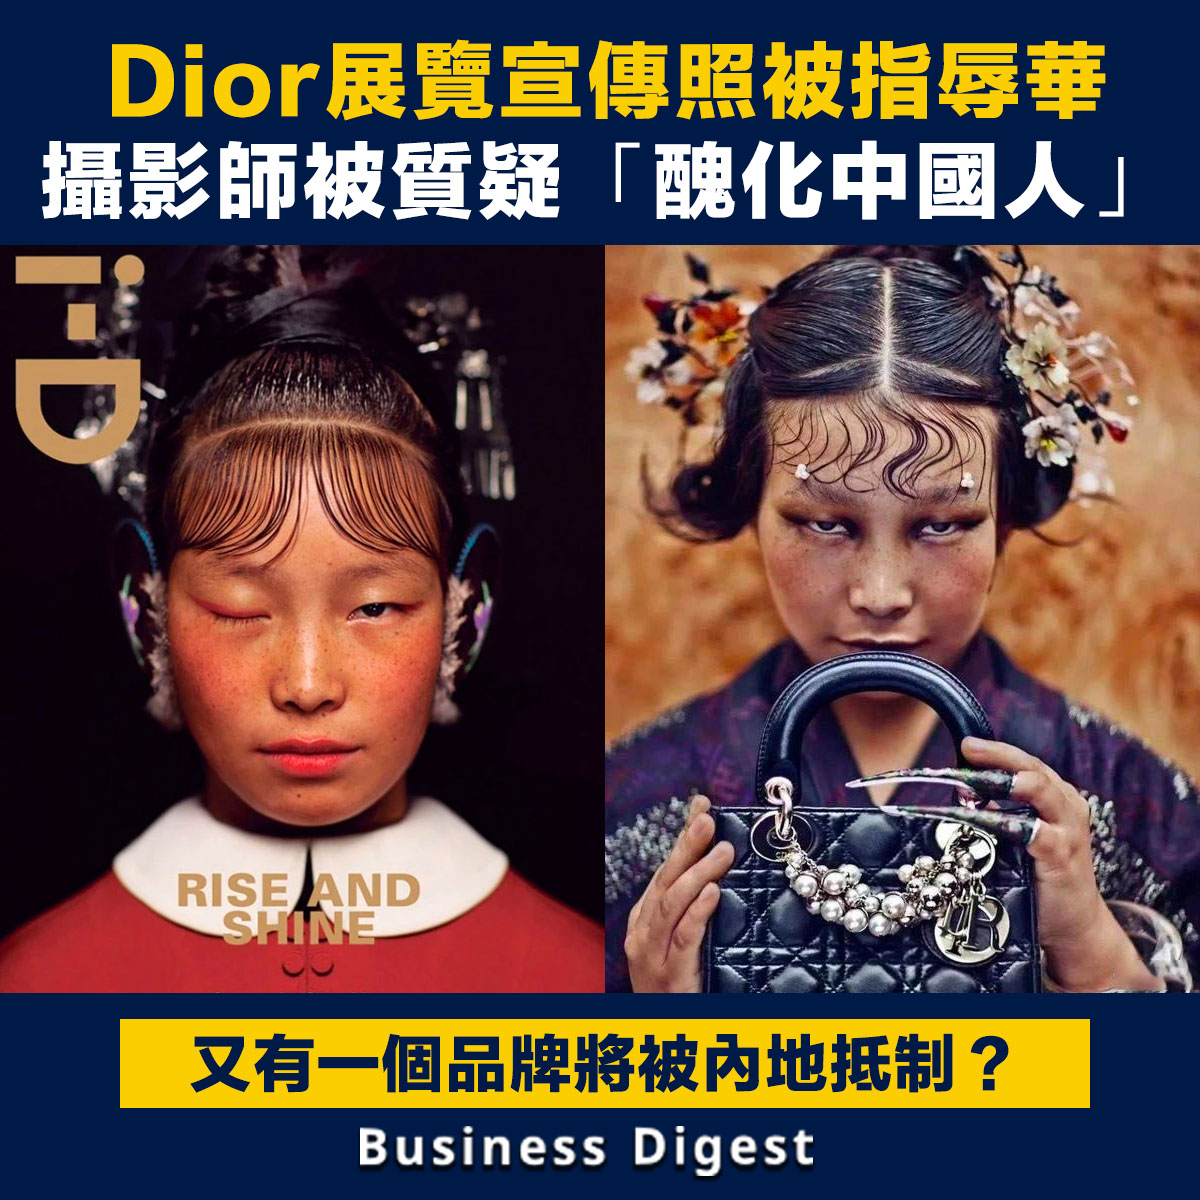 Dior展覽宣傳照被指辱華，攝影師被質疑「醜化中國人」